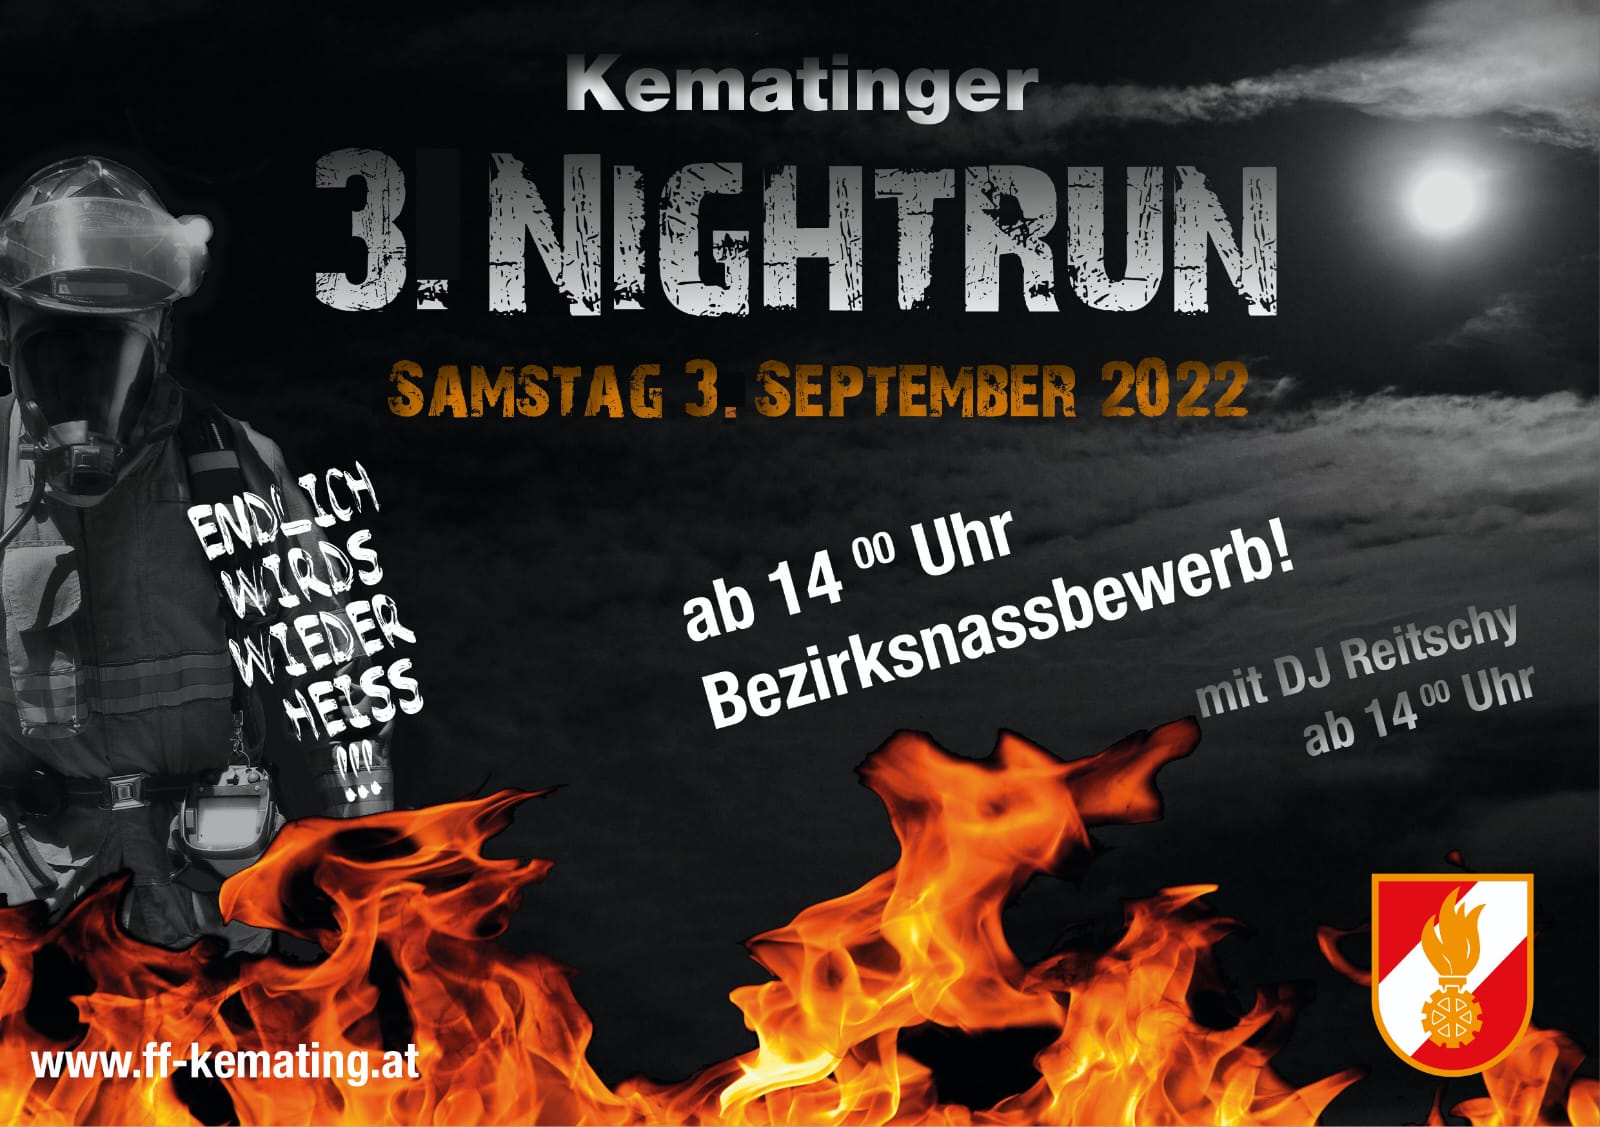 Anmeldung Kematinger Nightrun ab 17.06.2022